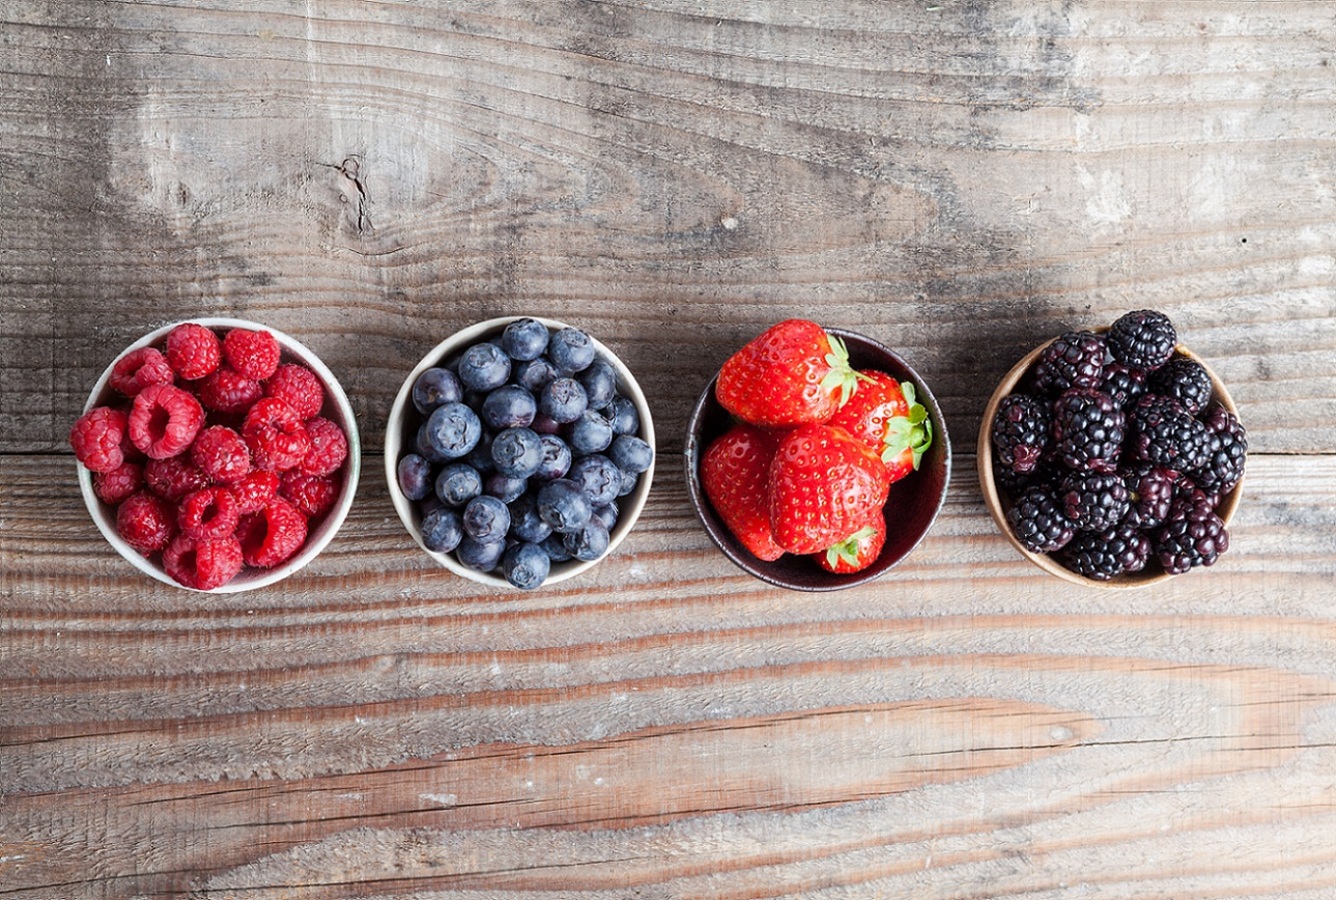 Berries - naucz się nazw owoców jagodowych w języku angielskim